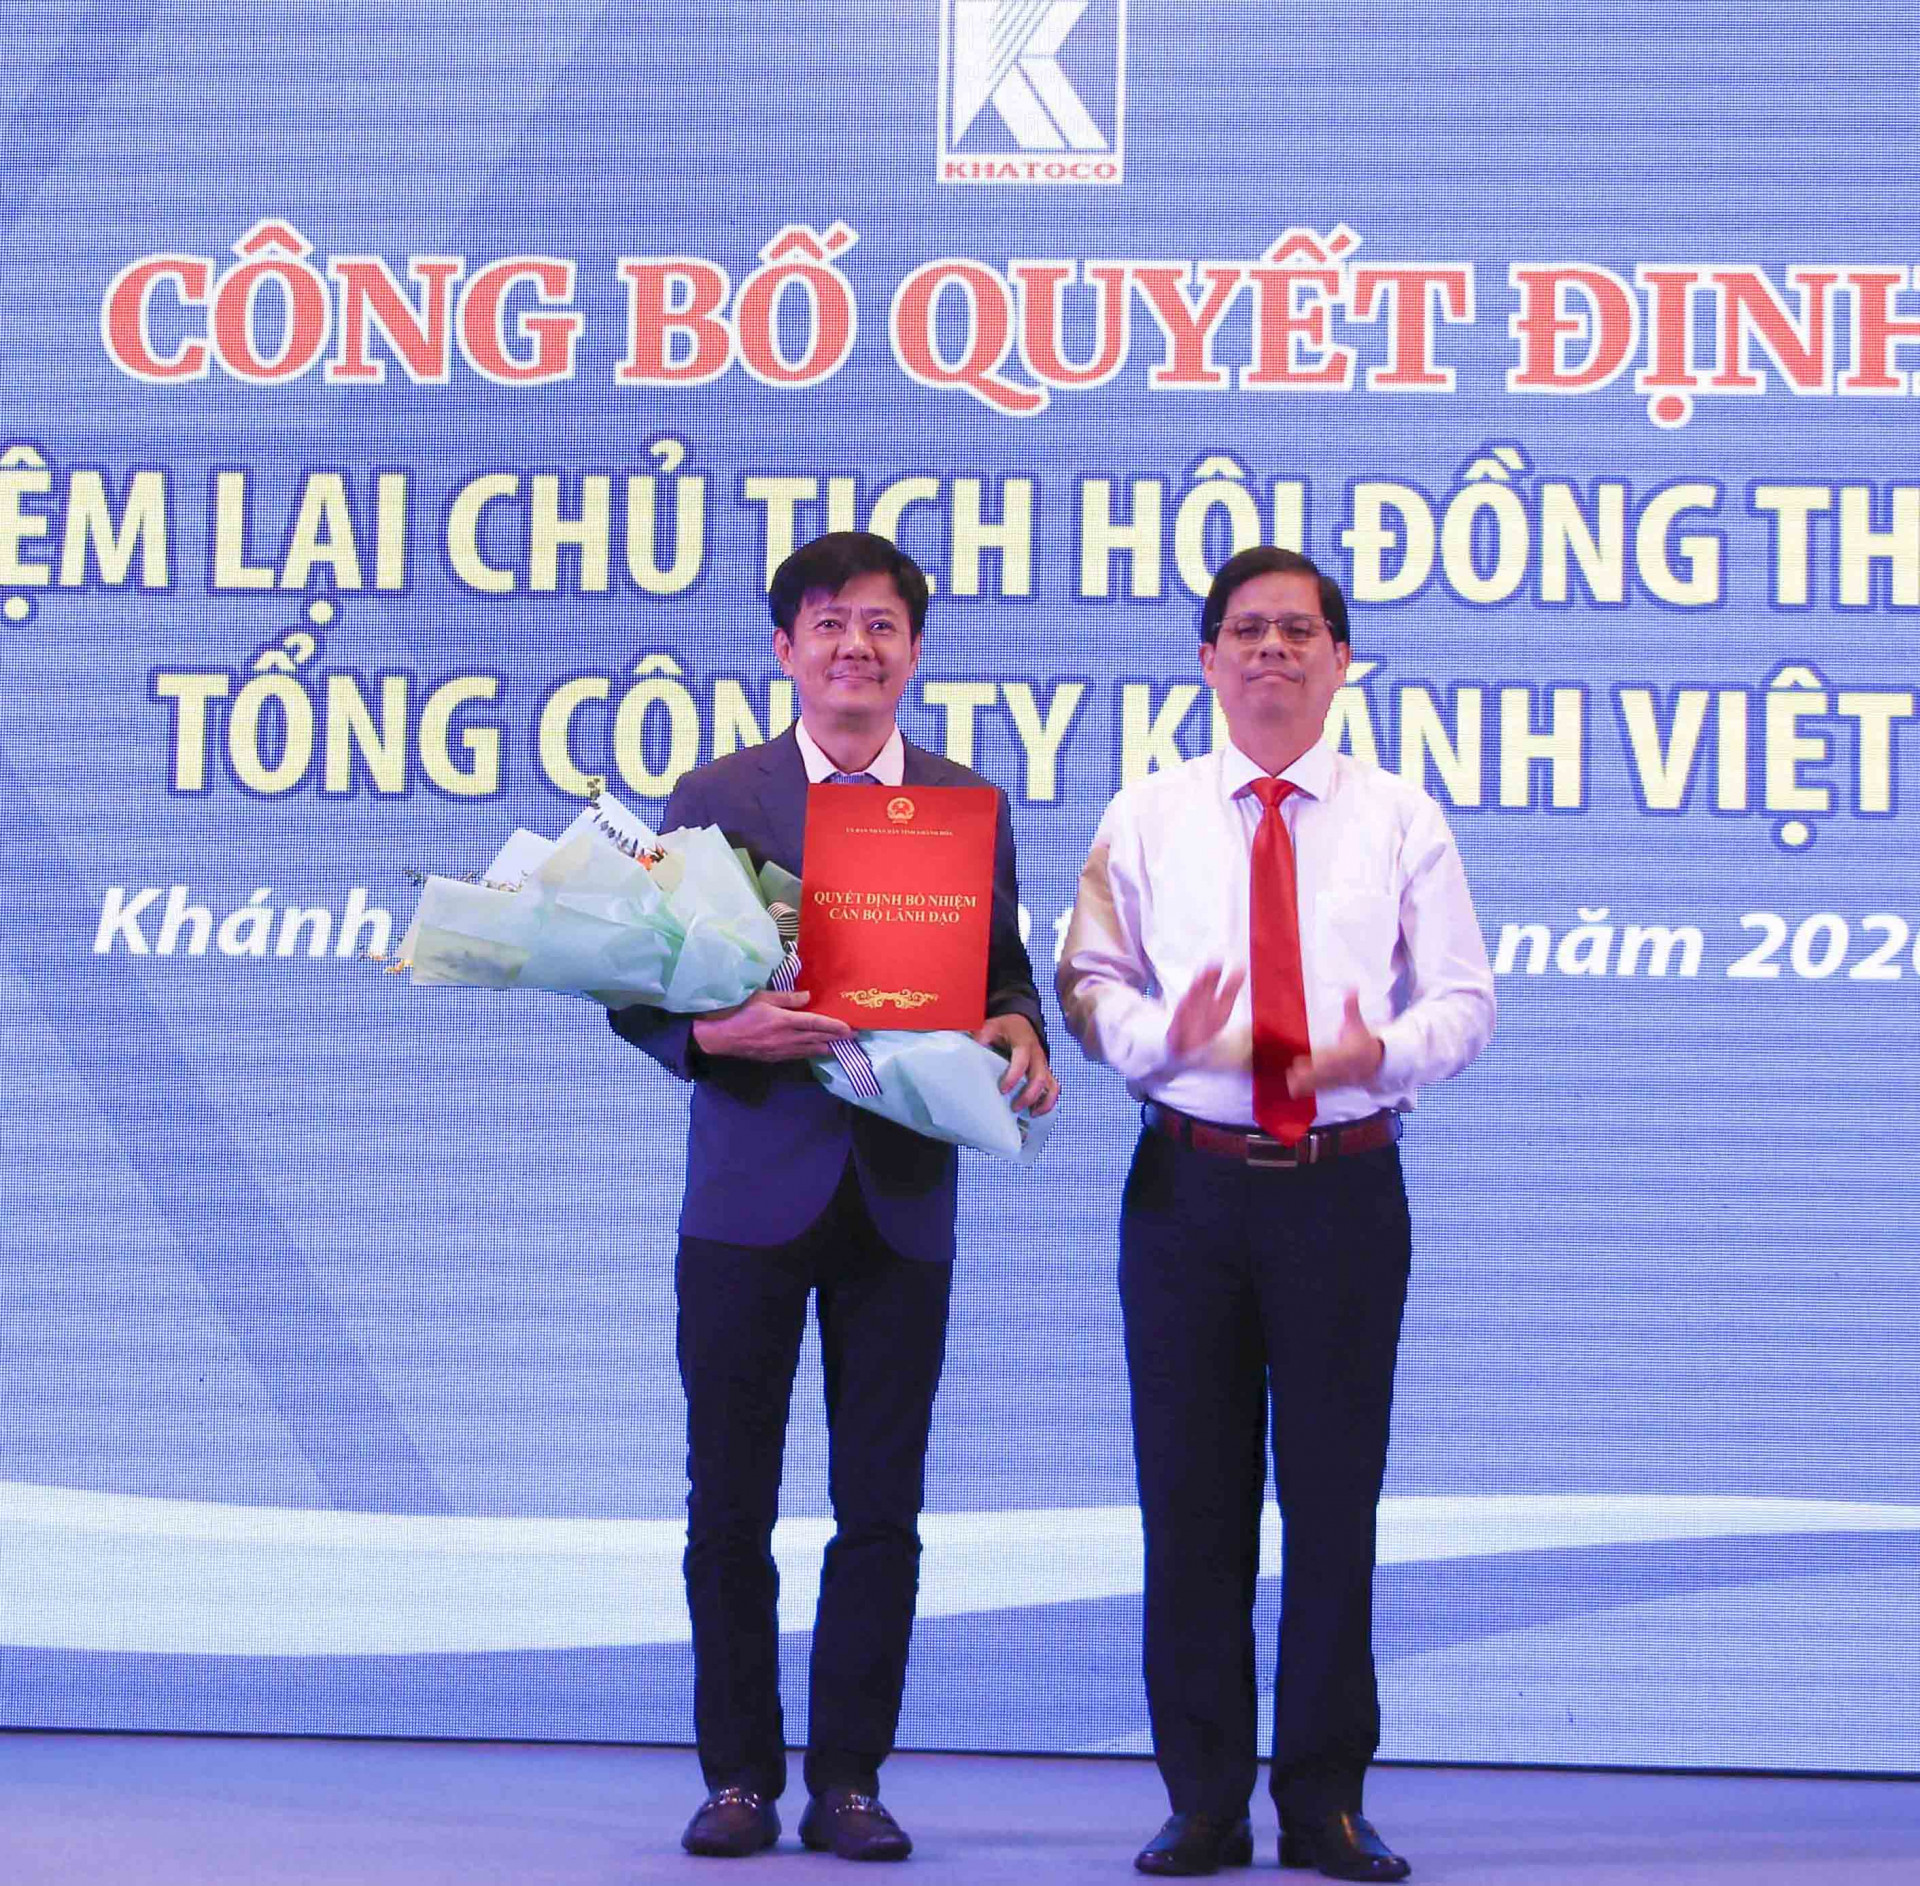 Ông Nguyễn Tấn Tuân trao quyết định bổ nhiệm cho ông Lê Tiến Anh.